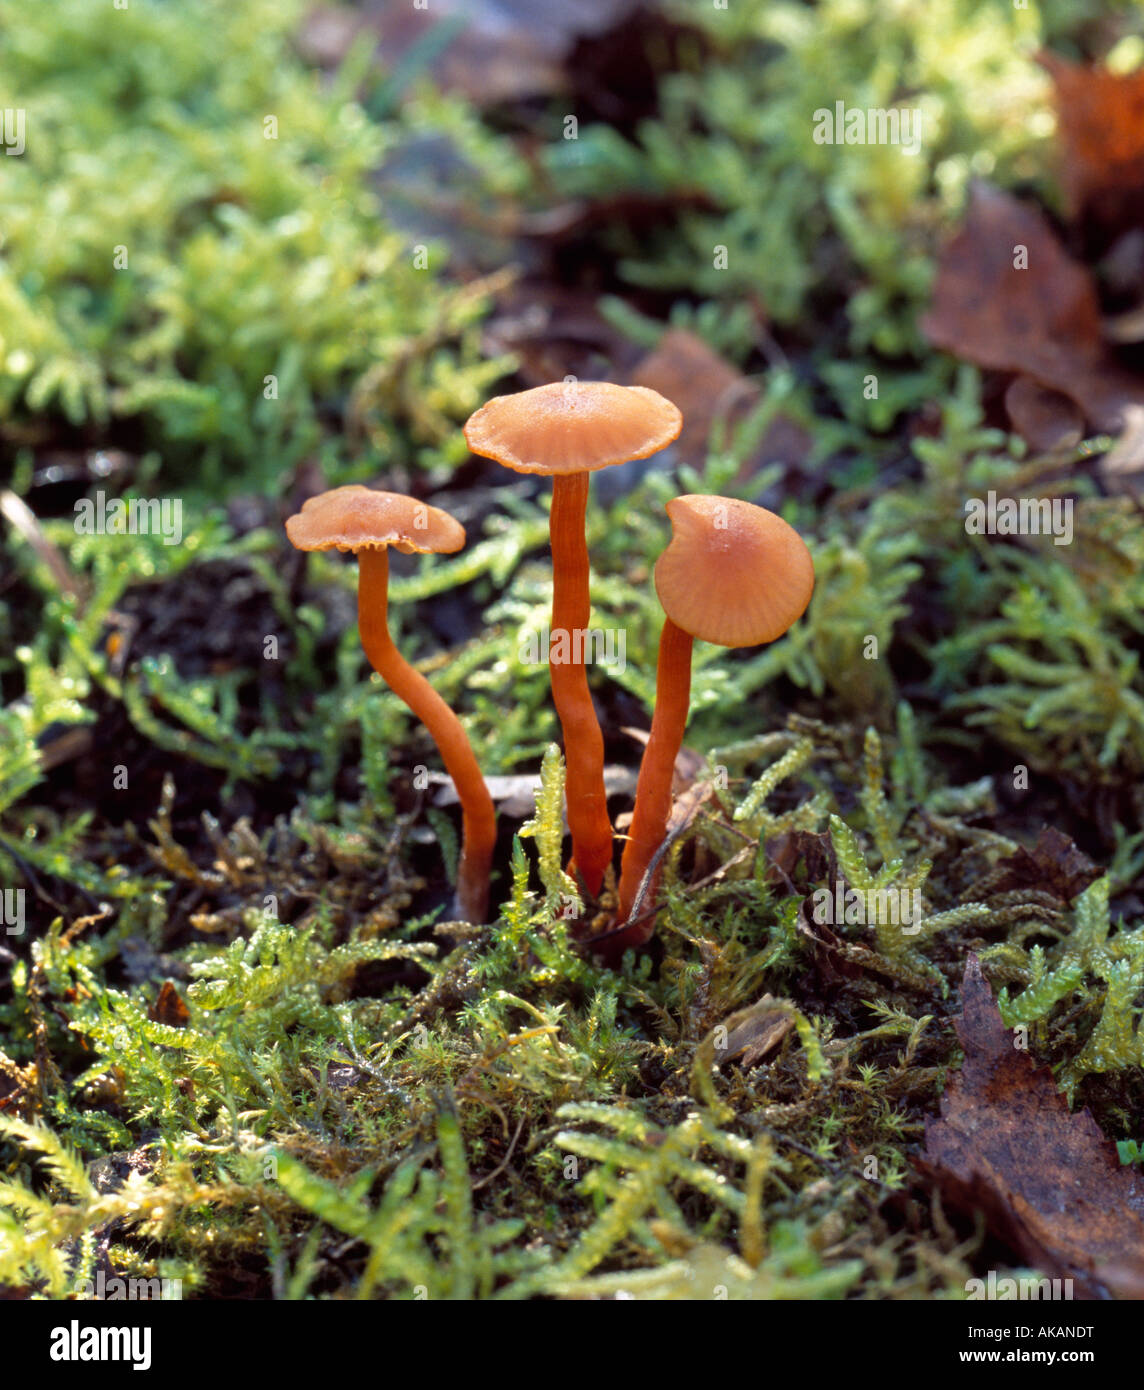 Deceiver laccaria laccata fungi. Stock Photo